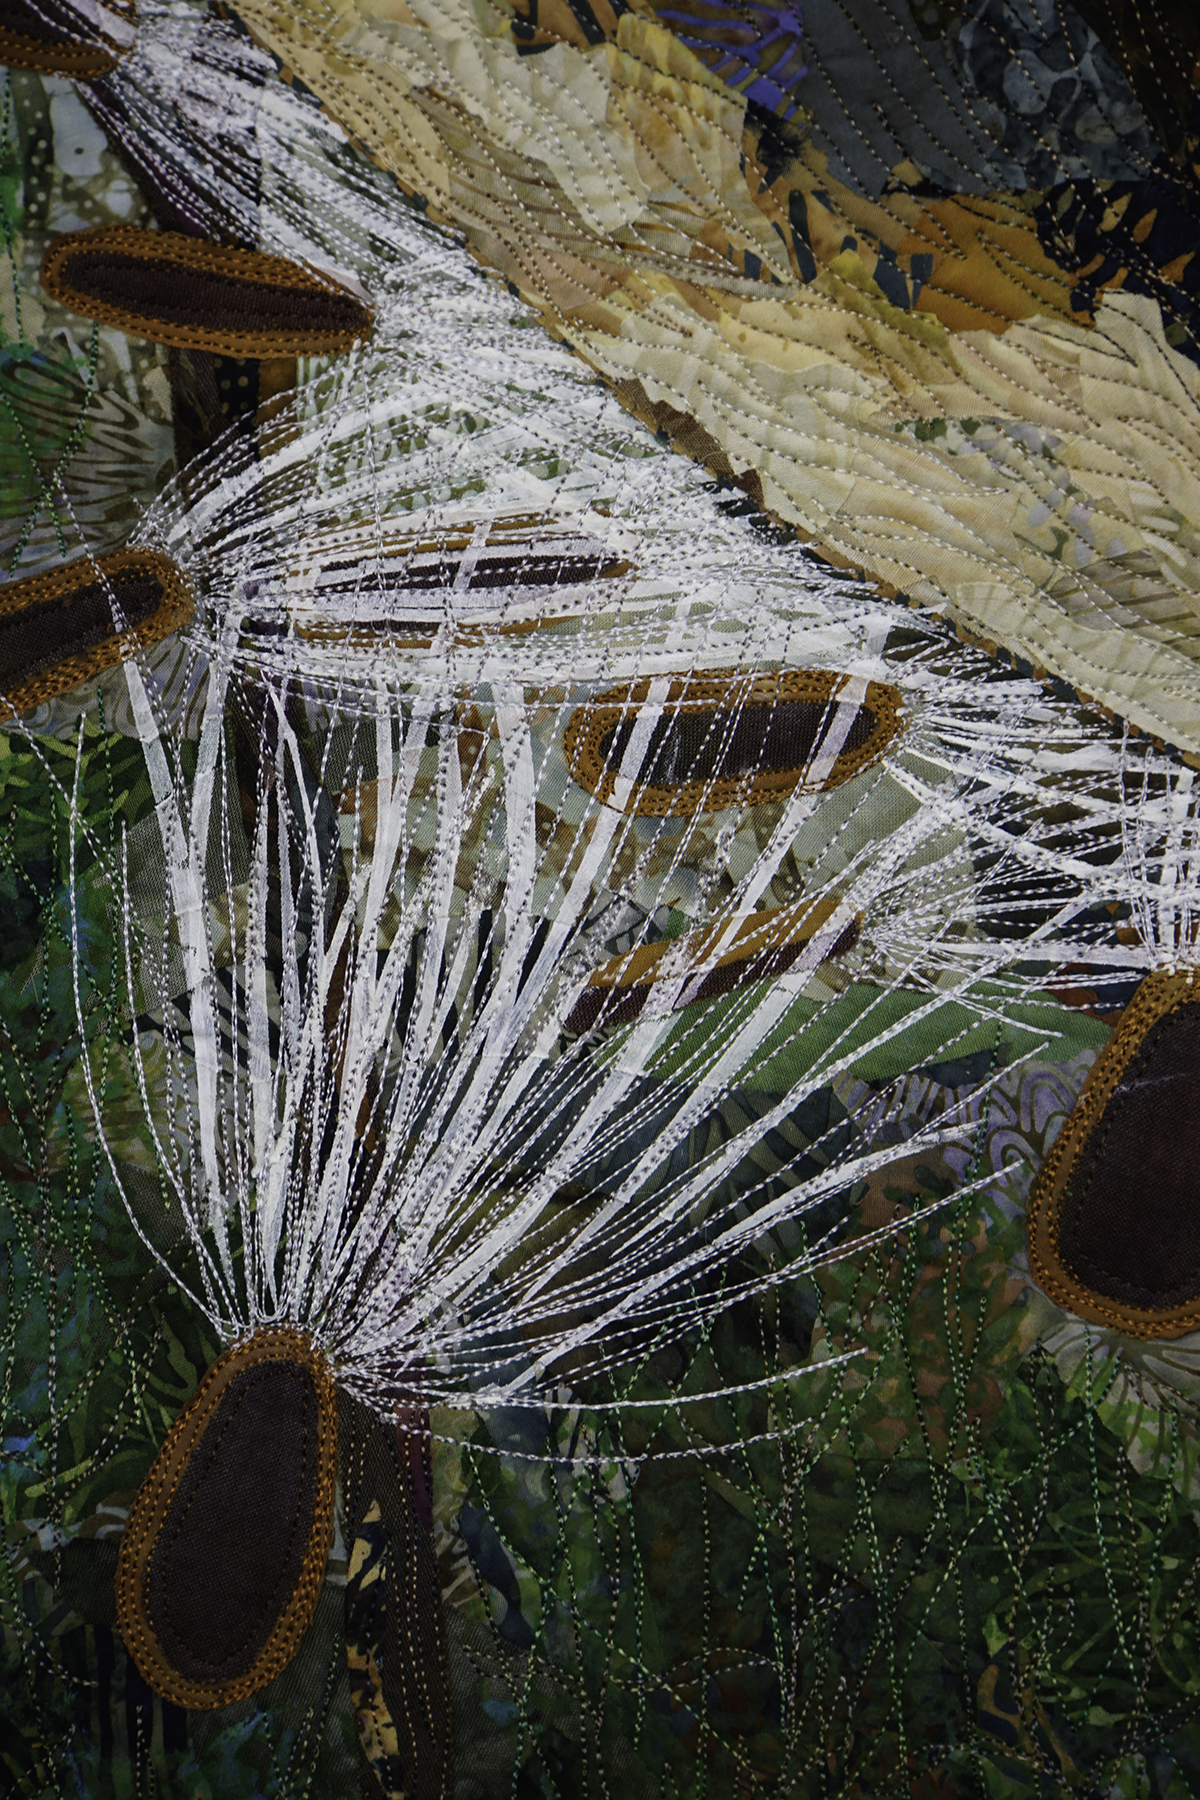 Milkweed pod, seeds and silks detail